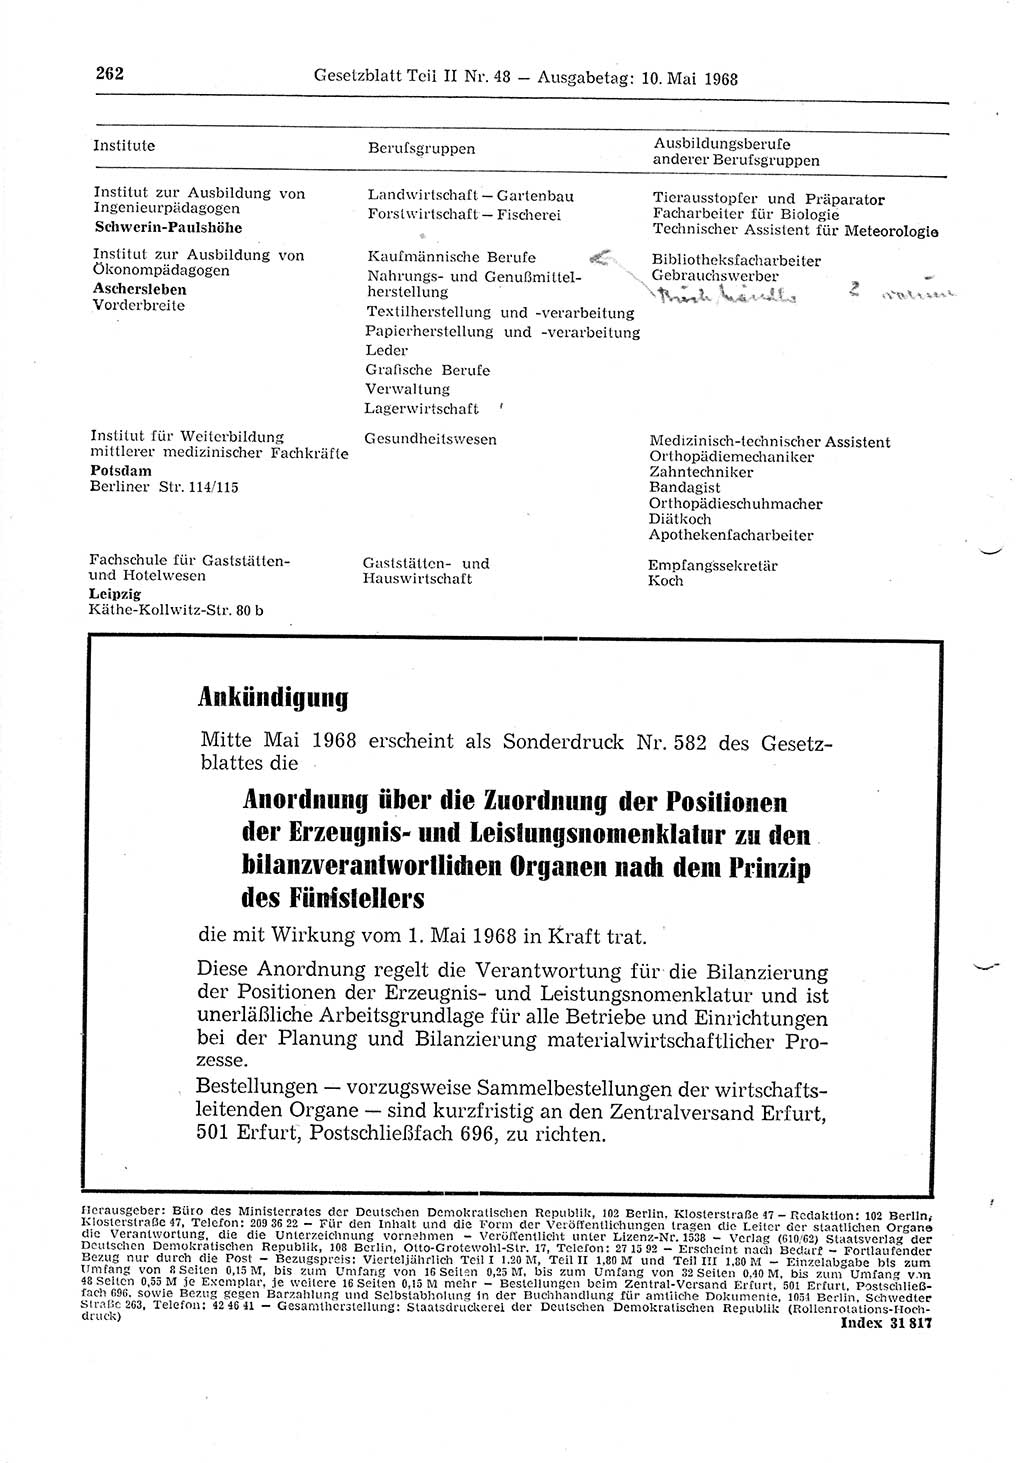 Gesetzblatt (GBl.) der Deutschen Demokratischen Republik (DDR) Teil ⅠⅠ 1968, Seite 262 (GBl. DDR ⅠⅠ 1968, S. 262)